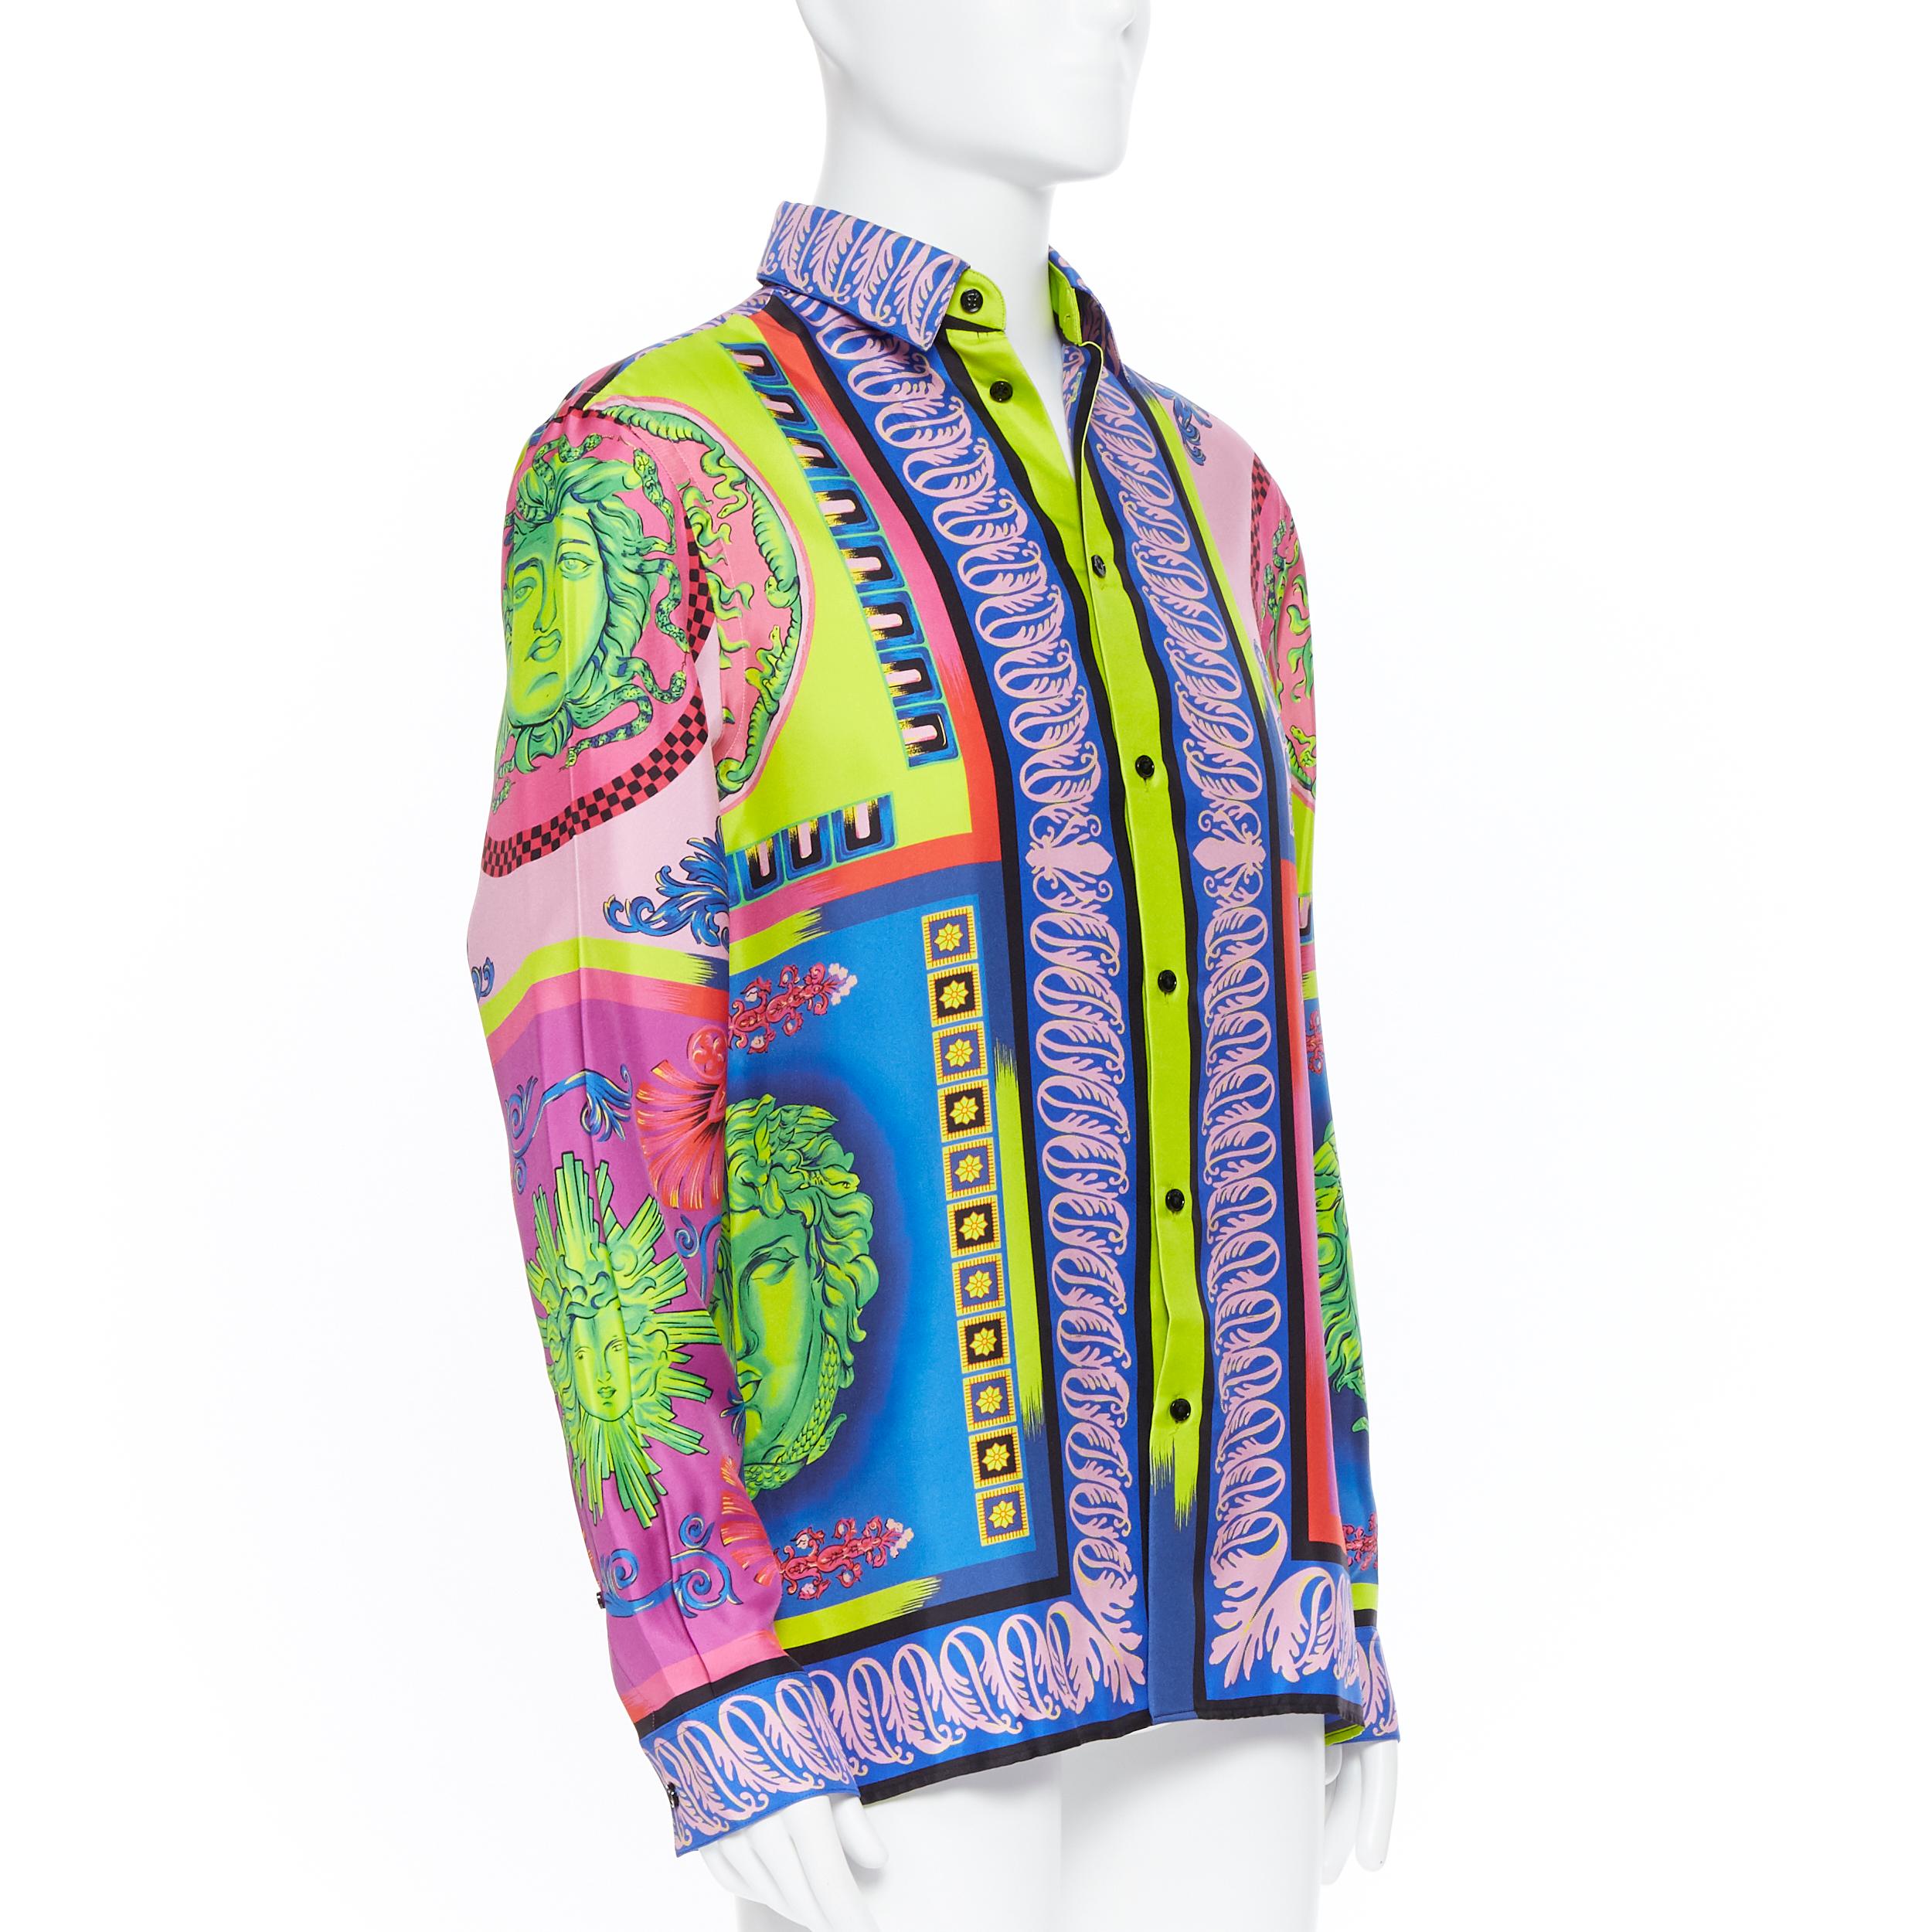 Men's new VERSACE 2018 Runway Pop Foulard 100% silk neon Medusa baroque shirt EU40 L